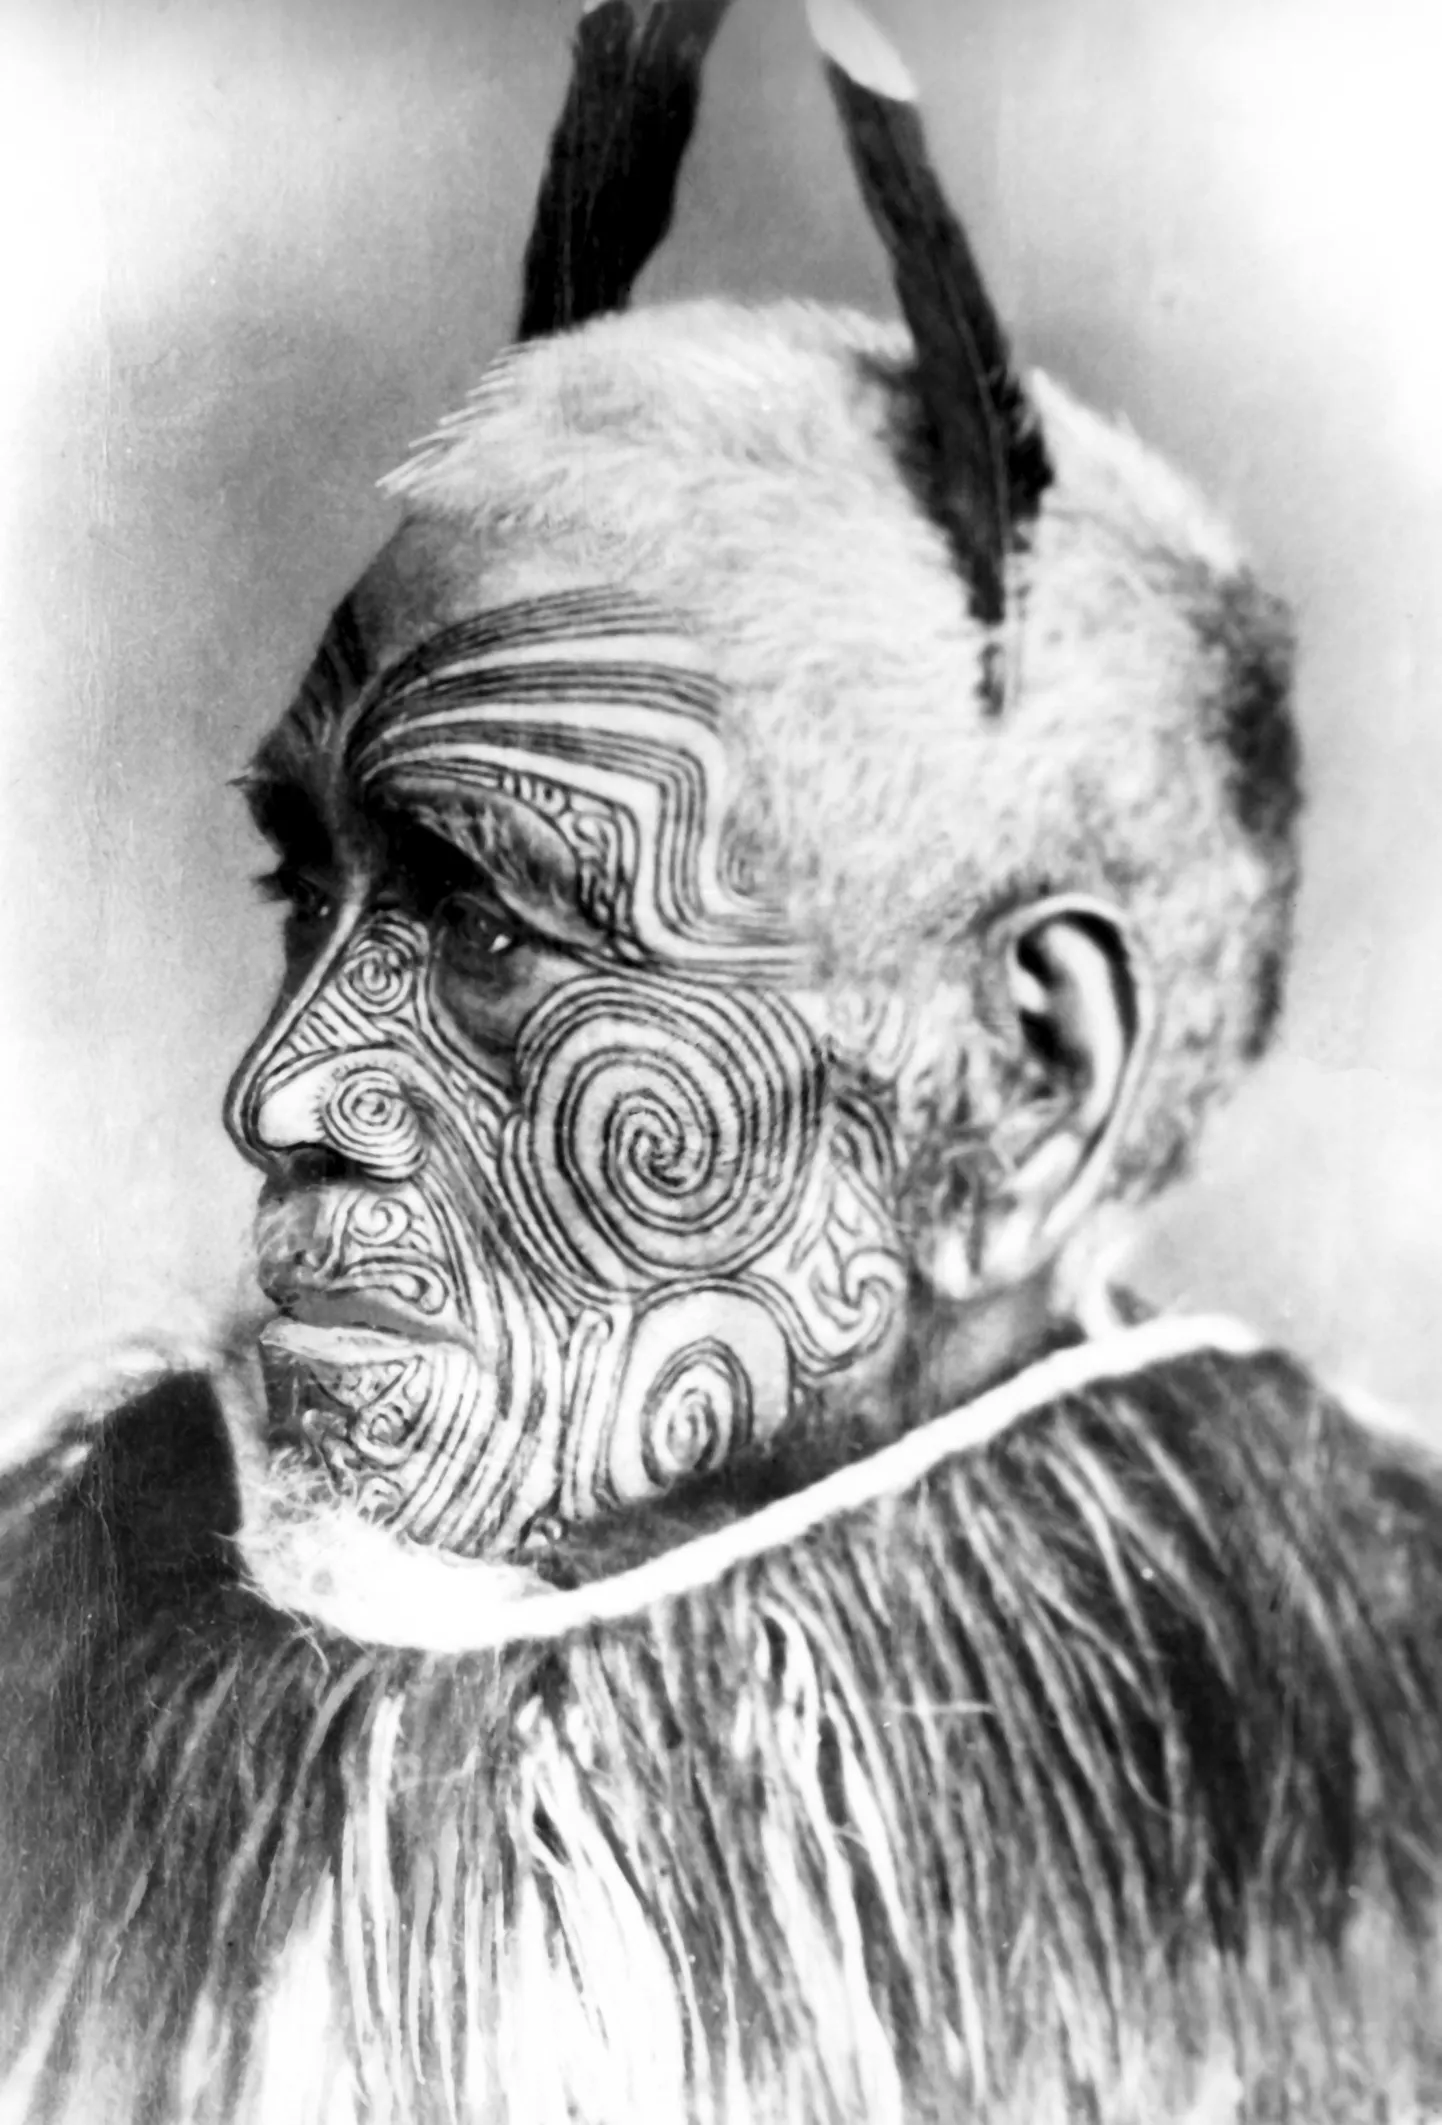 Traditsiooniliselt tätoveerisid maoorid vaid sõjapealikute nägusid, kuid kui muumiaäri õitsele lõi, hakati tätoveerima ka orjasid, et nende pead maha müüa.